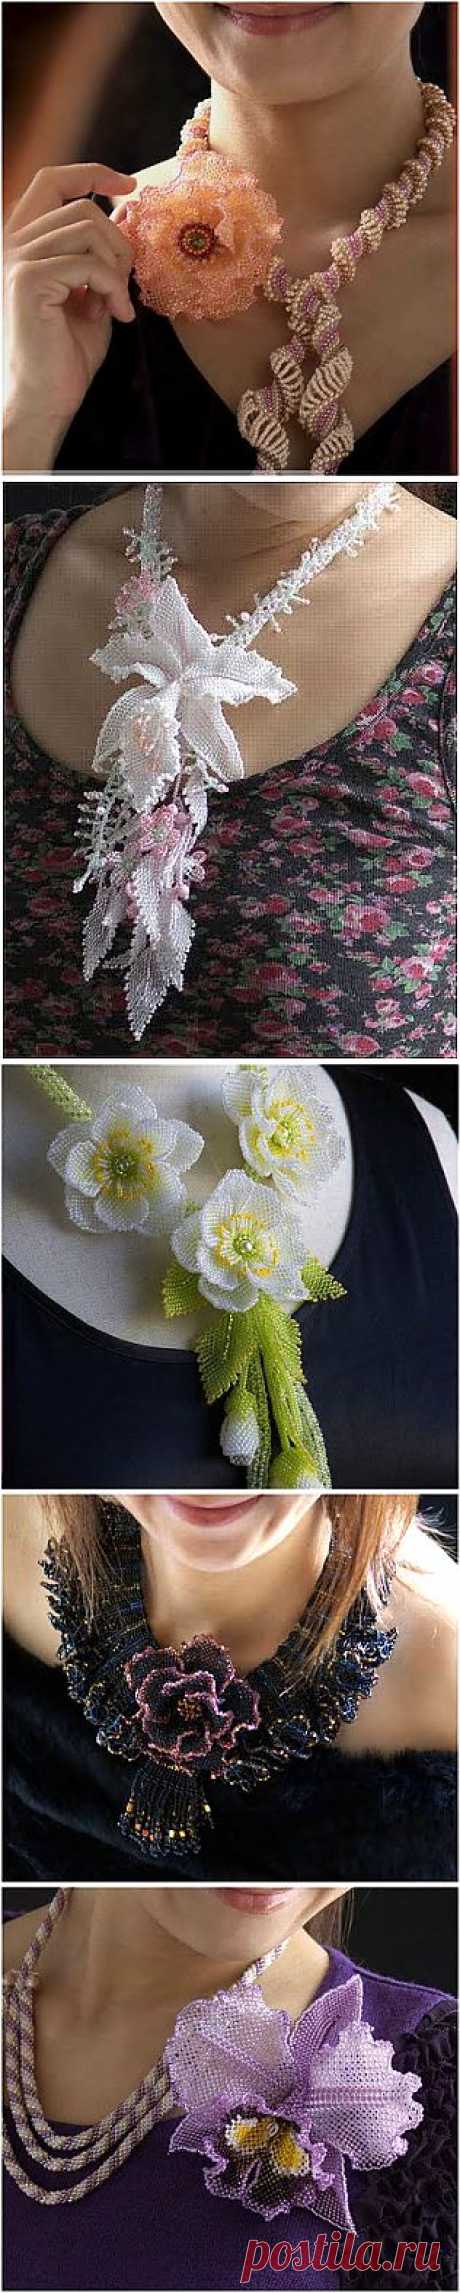 Бисероплетение: цветочные ювелирные изделия